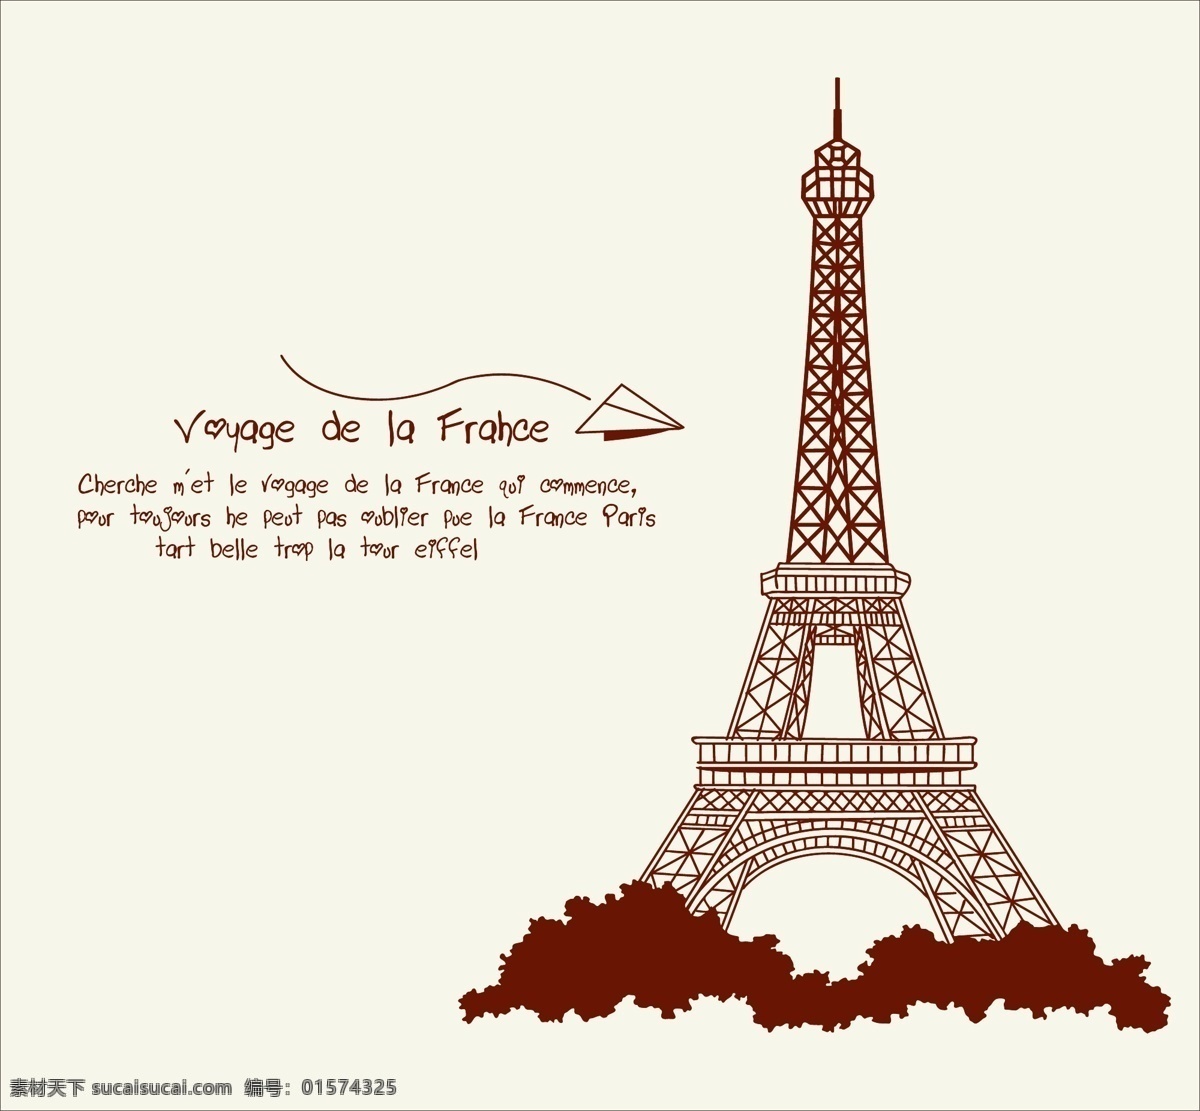 巴黎铁塔 铁塔 塔 飞机 建筑 卡通 儿童房 矢量图 底纹边框 条纹线条